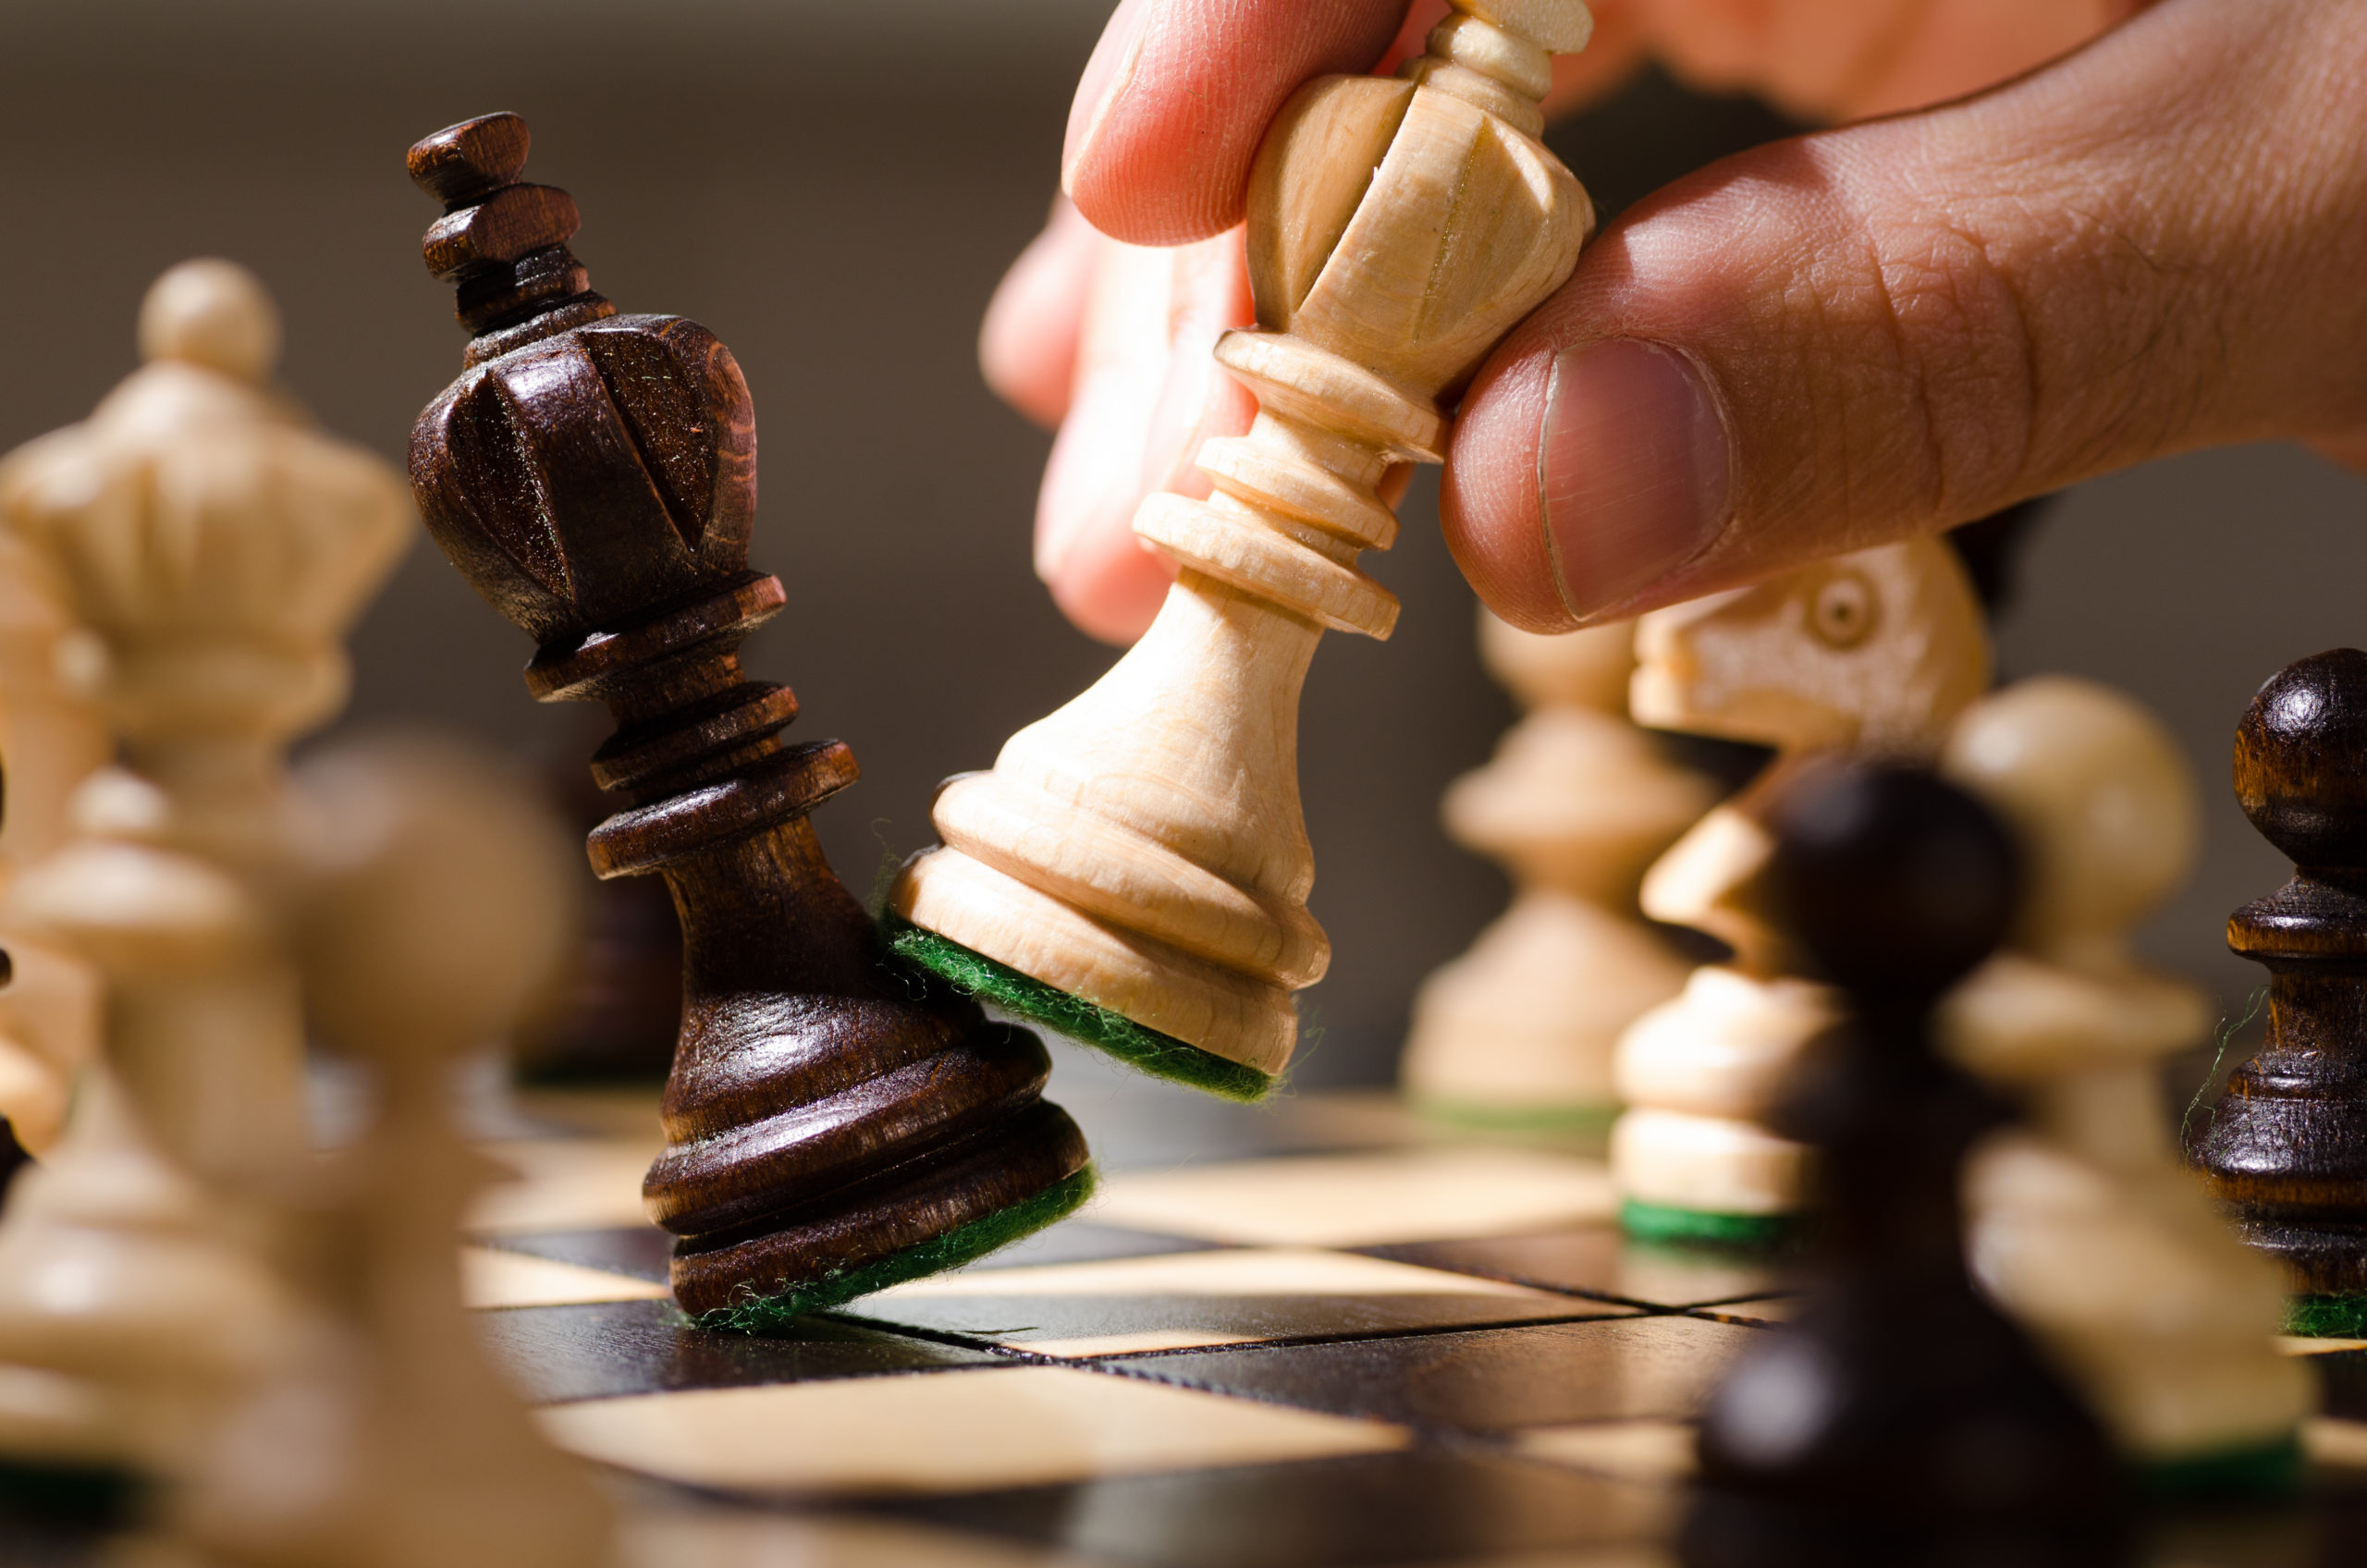 Vida longa à rainha: encontre a peça de xadrez escondida no desafio visual